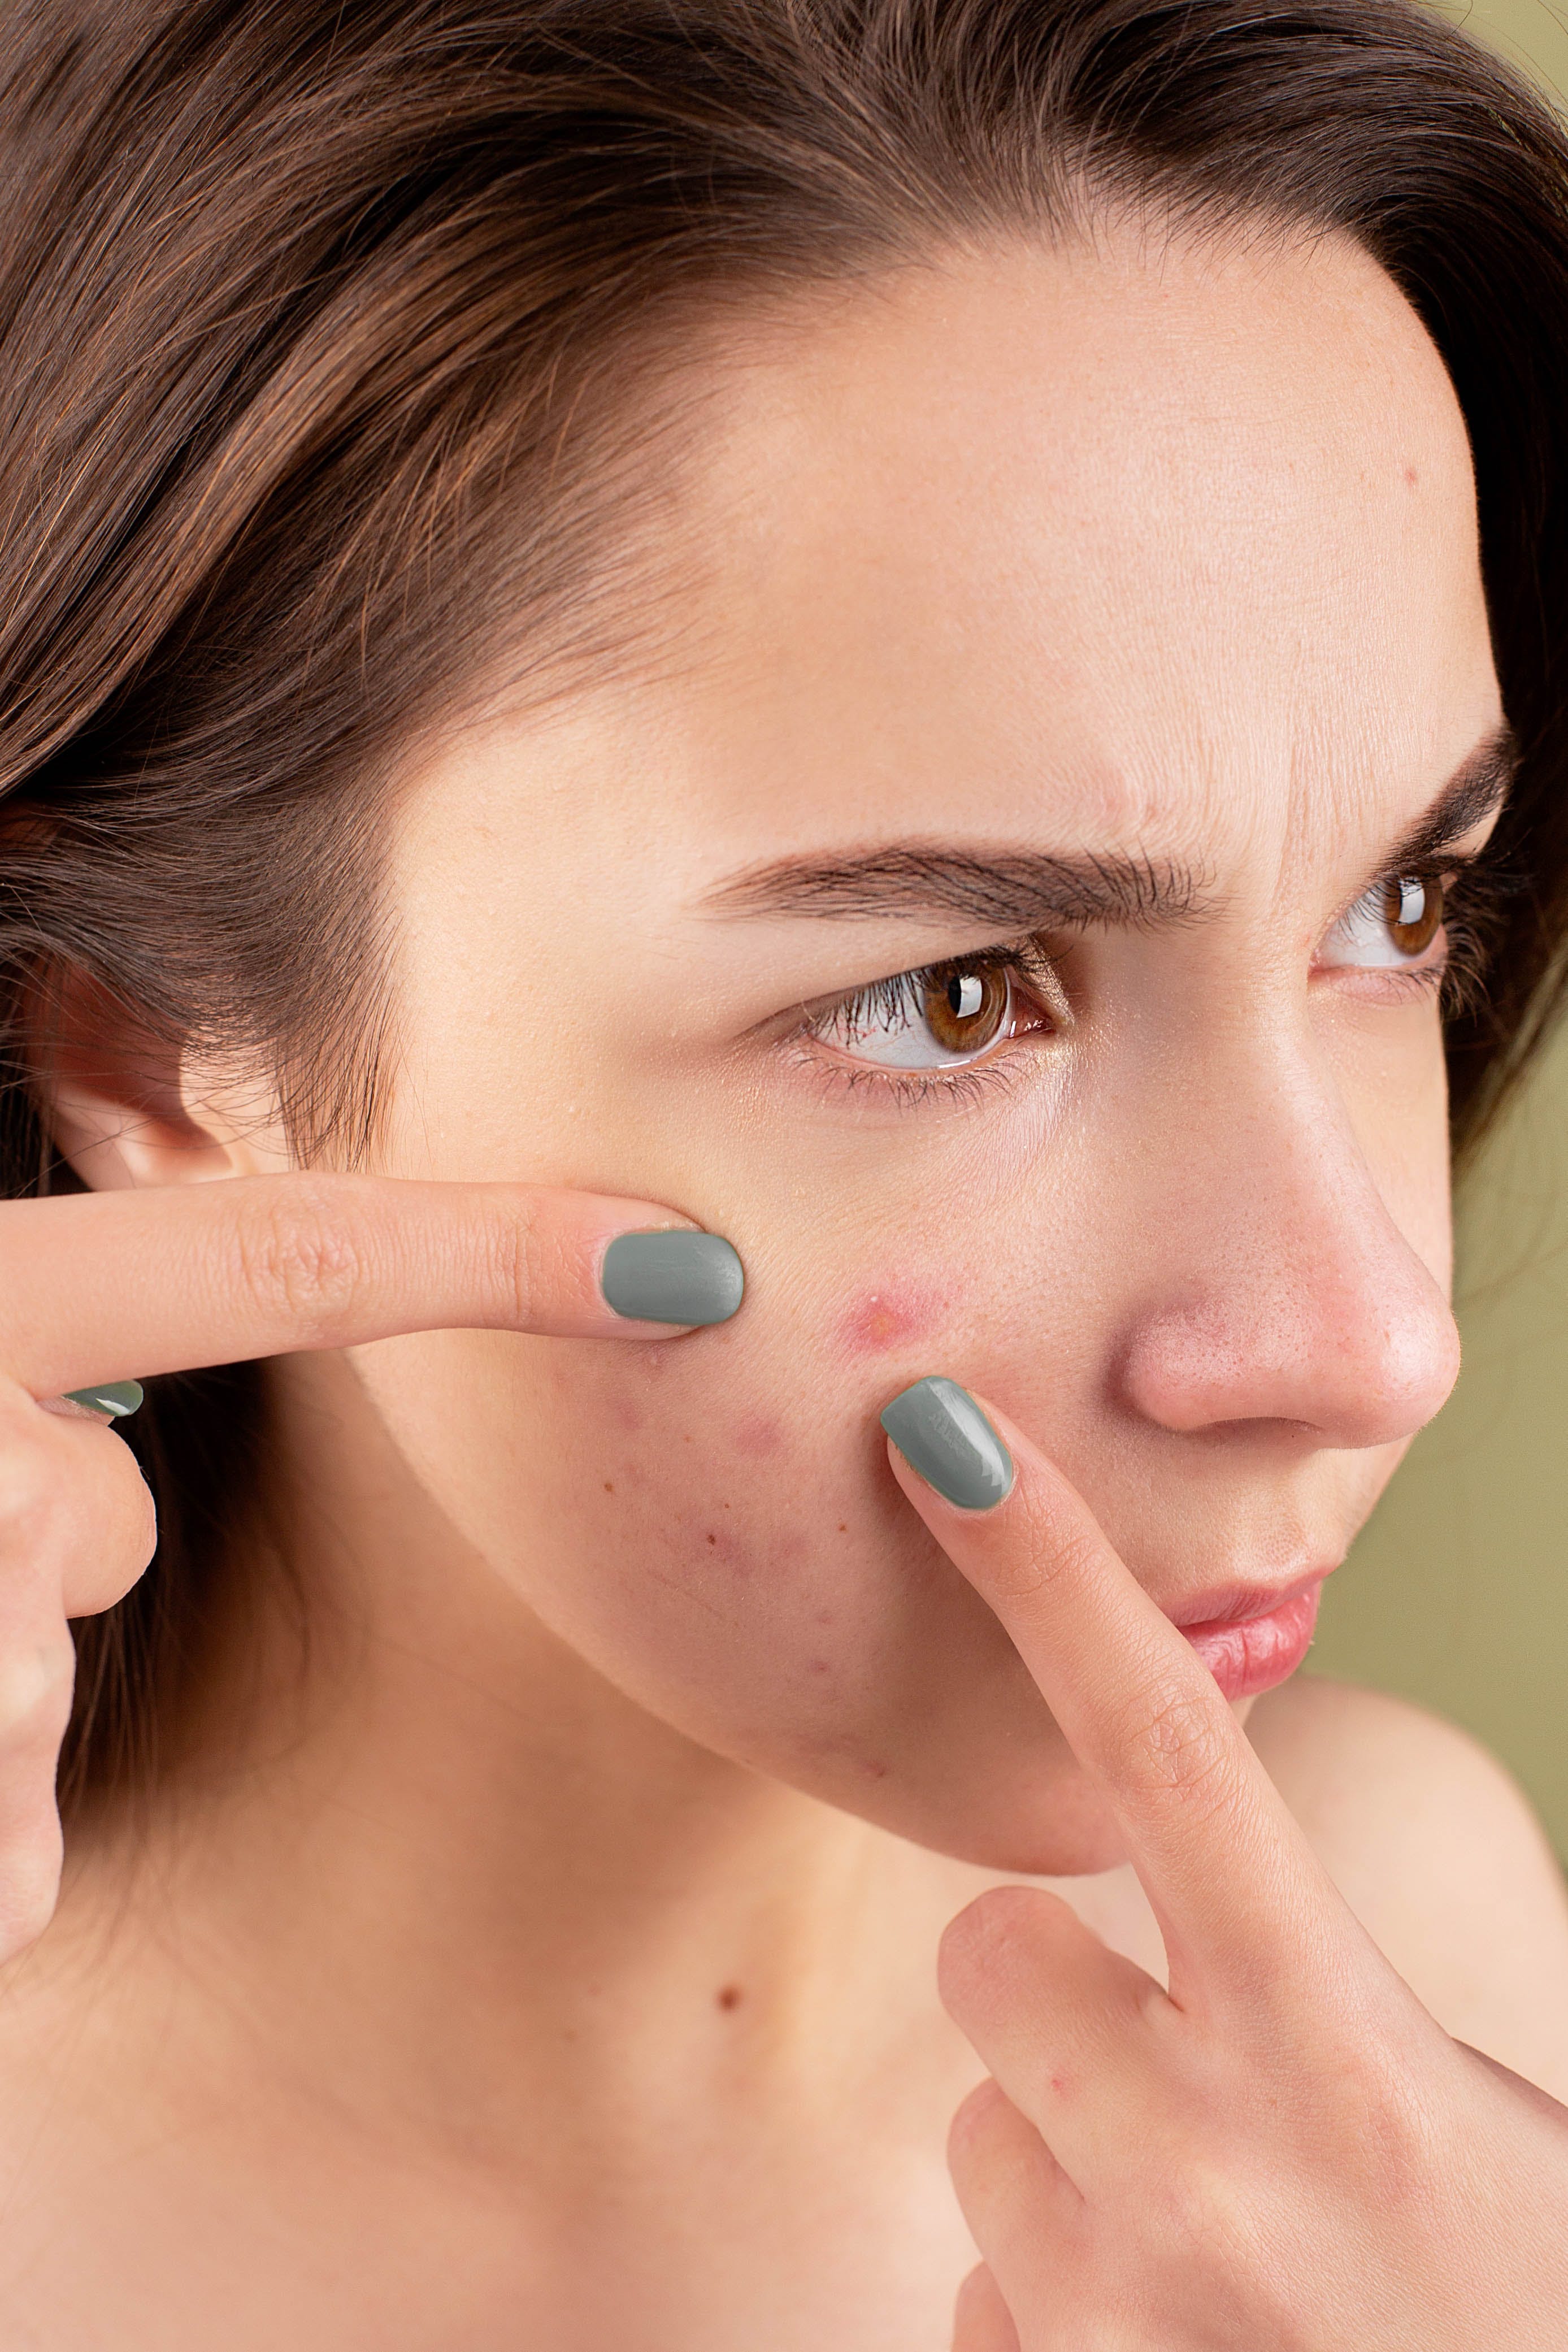 Una señora aplastándose un grano en la cara: Fuente: Pexels